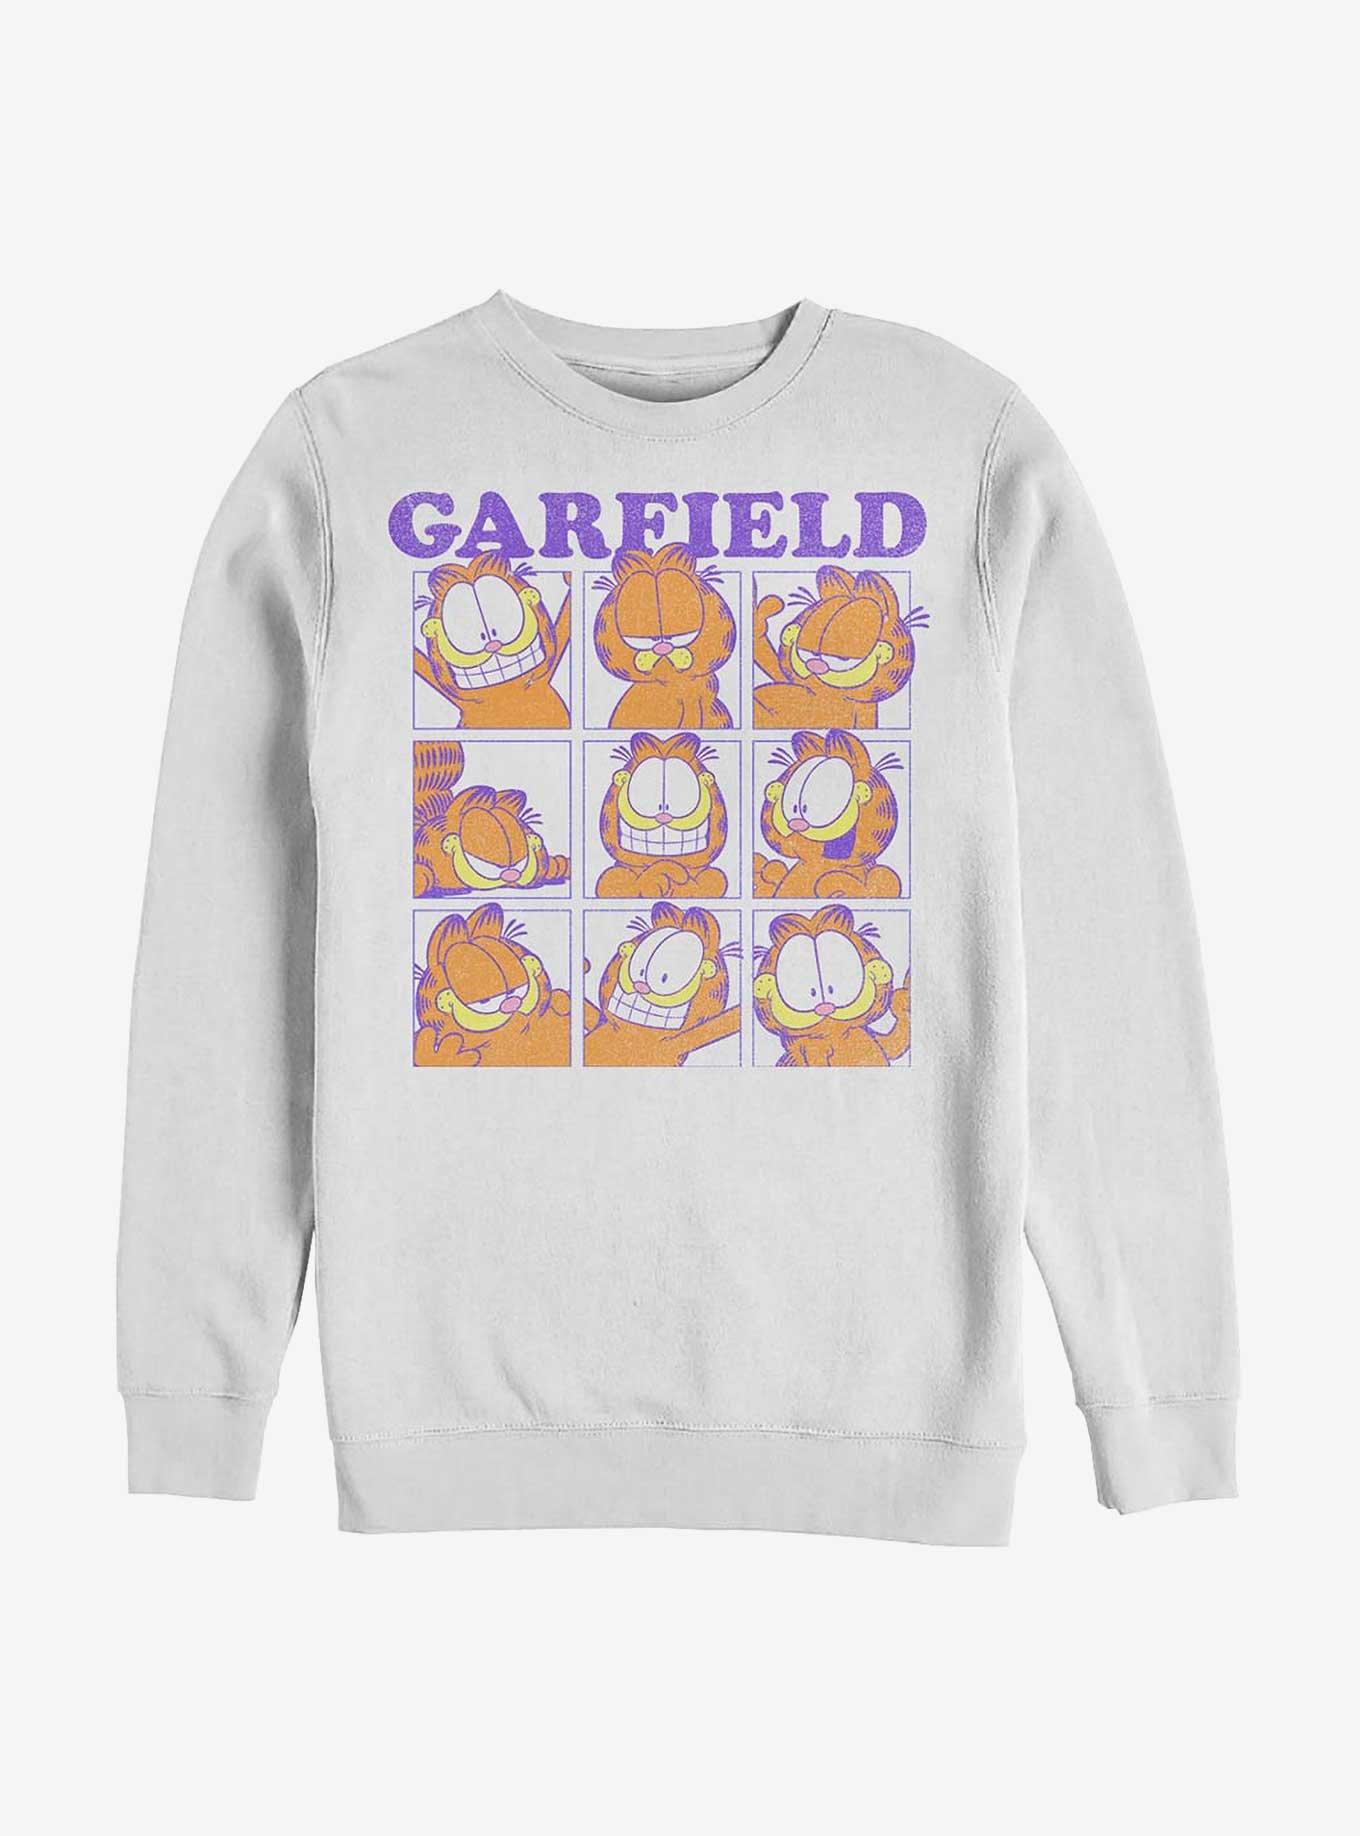 Garfield Many Faces of Garfield Sweatshirt - WHITE | Hot Topic